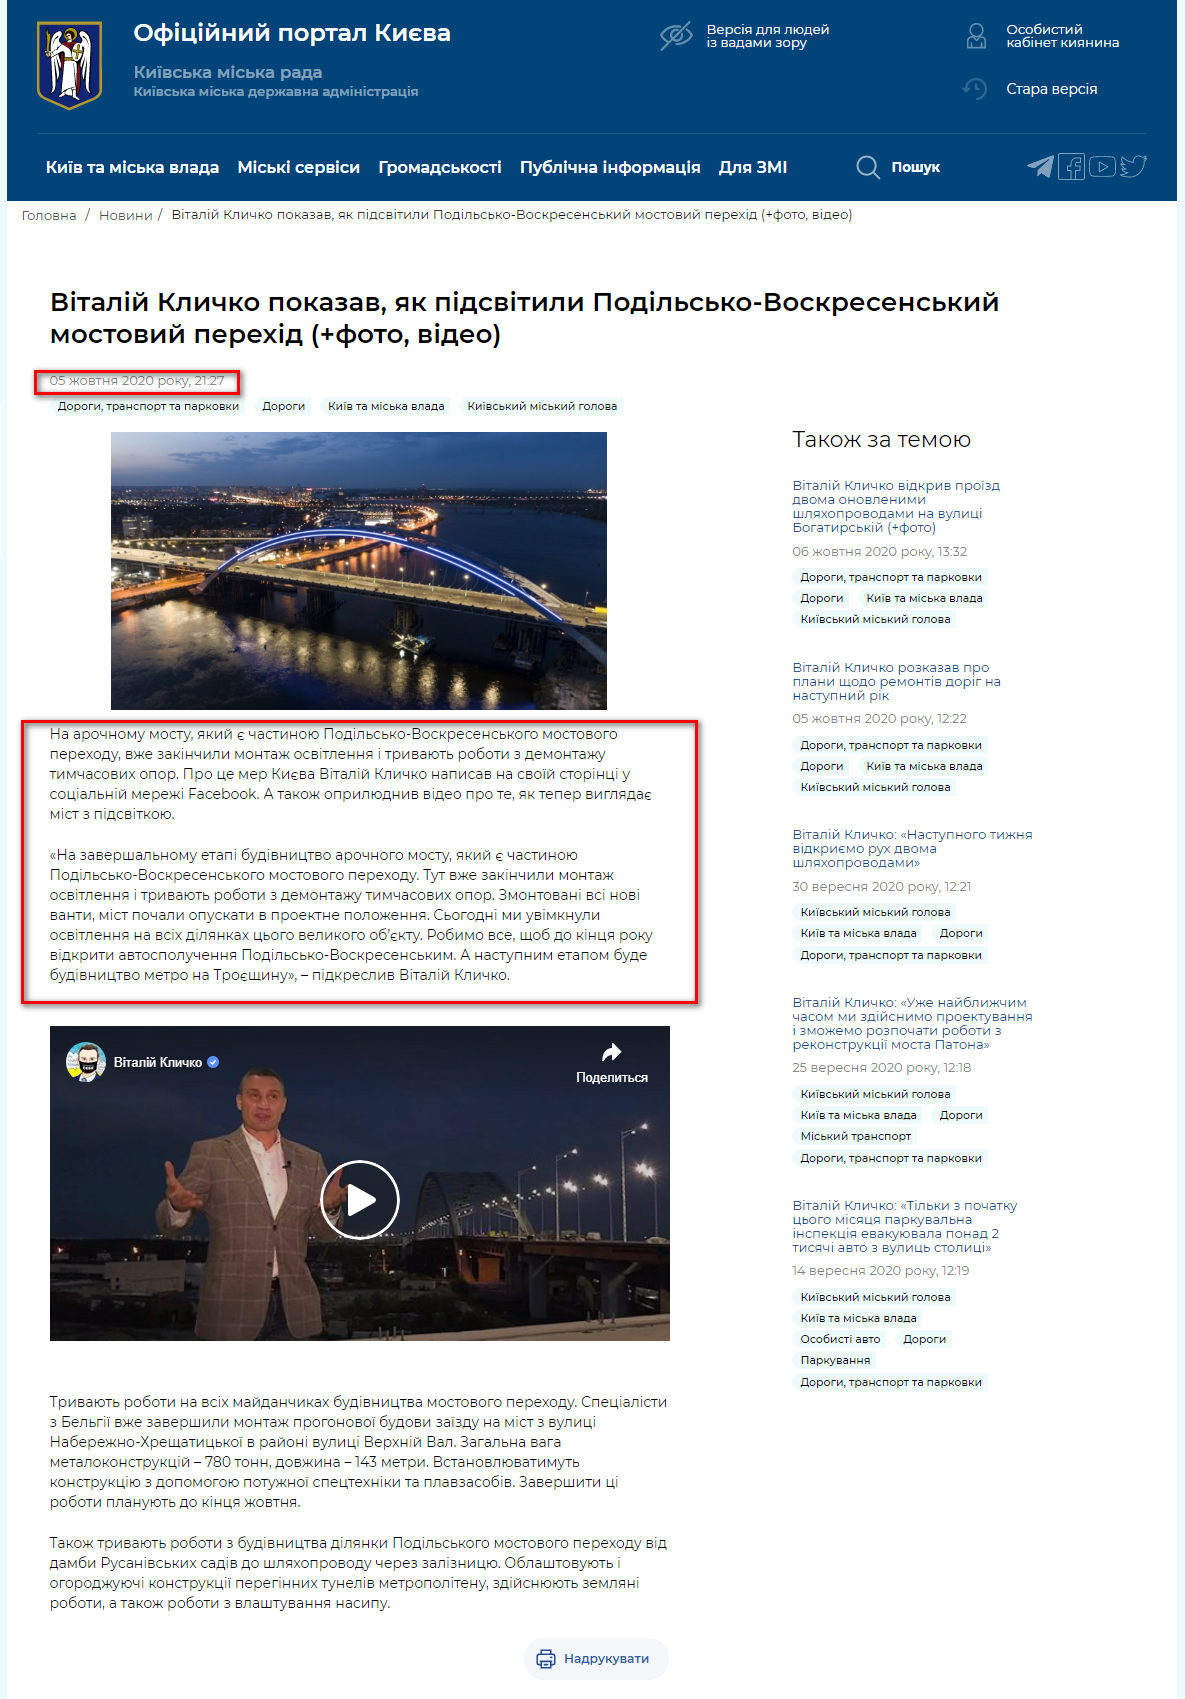 https://kyivcity.gov.ua/news/vitaliy_klichko_pokazav_yak_pidsvitili_podilsko-voskresenskiy_mostoviy_perekhid/